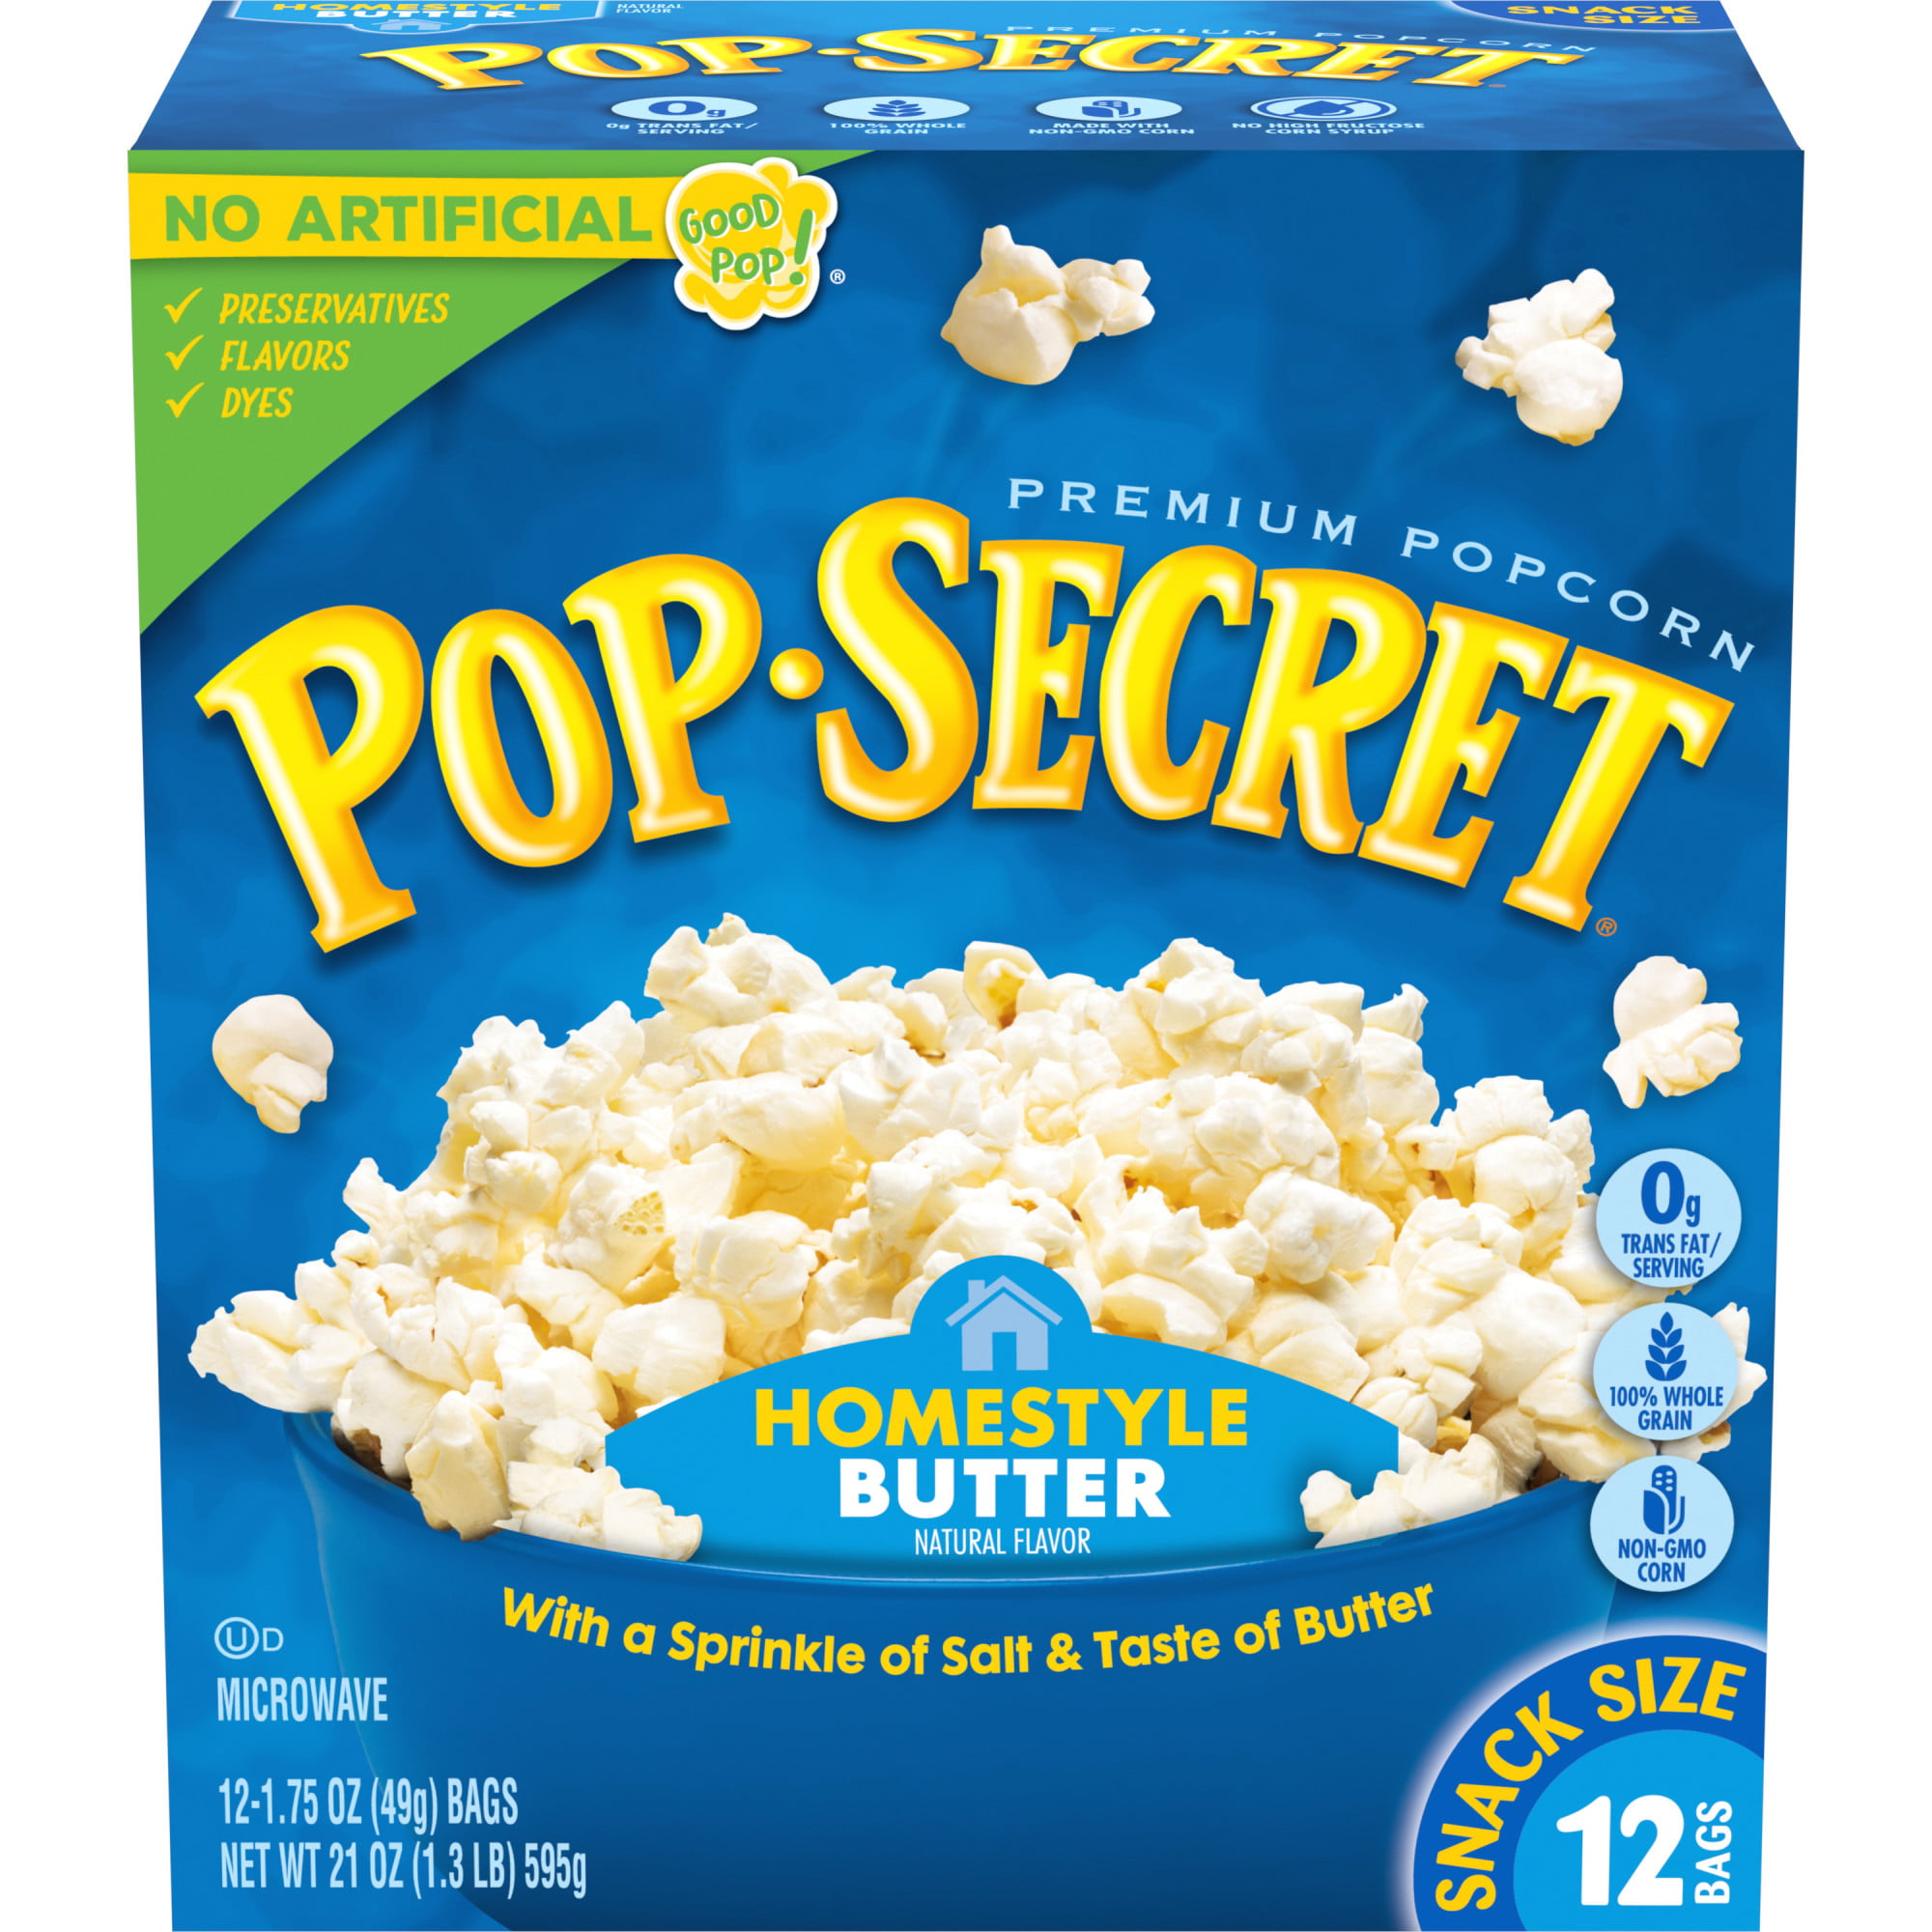 pop-secret-popcorn-homestyle-butter-microwave-popcorn-1-75-oz-snack